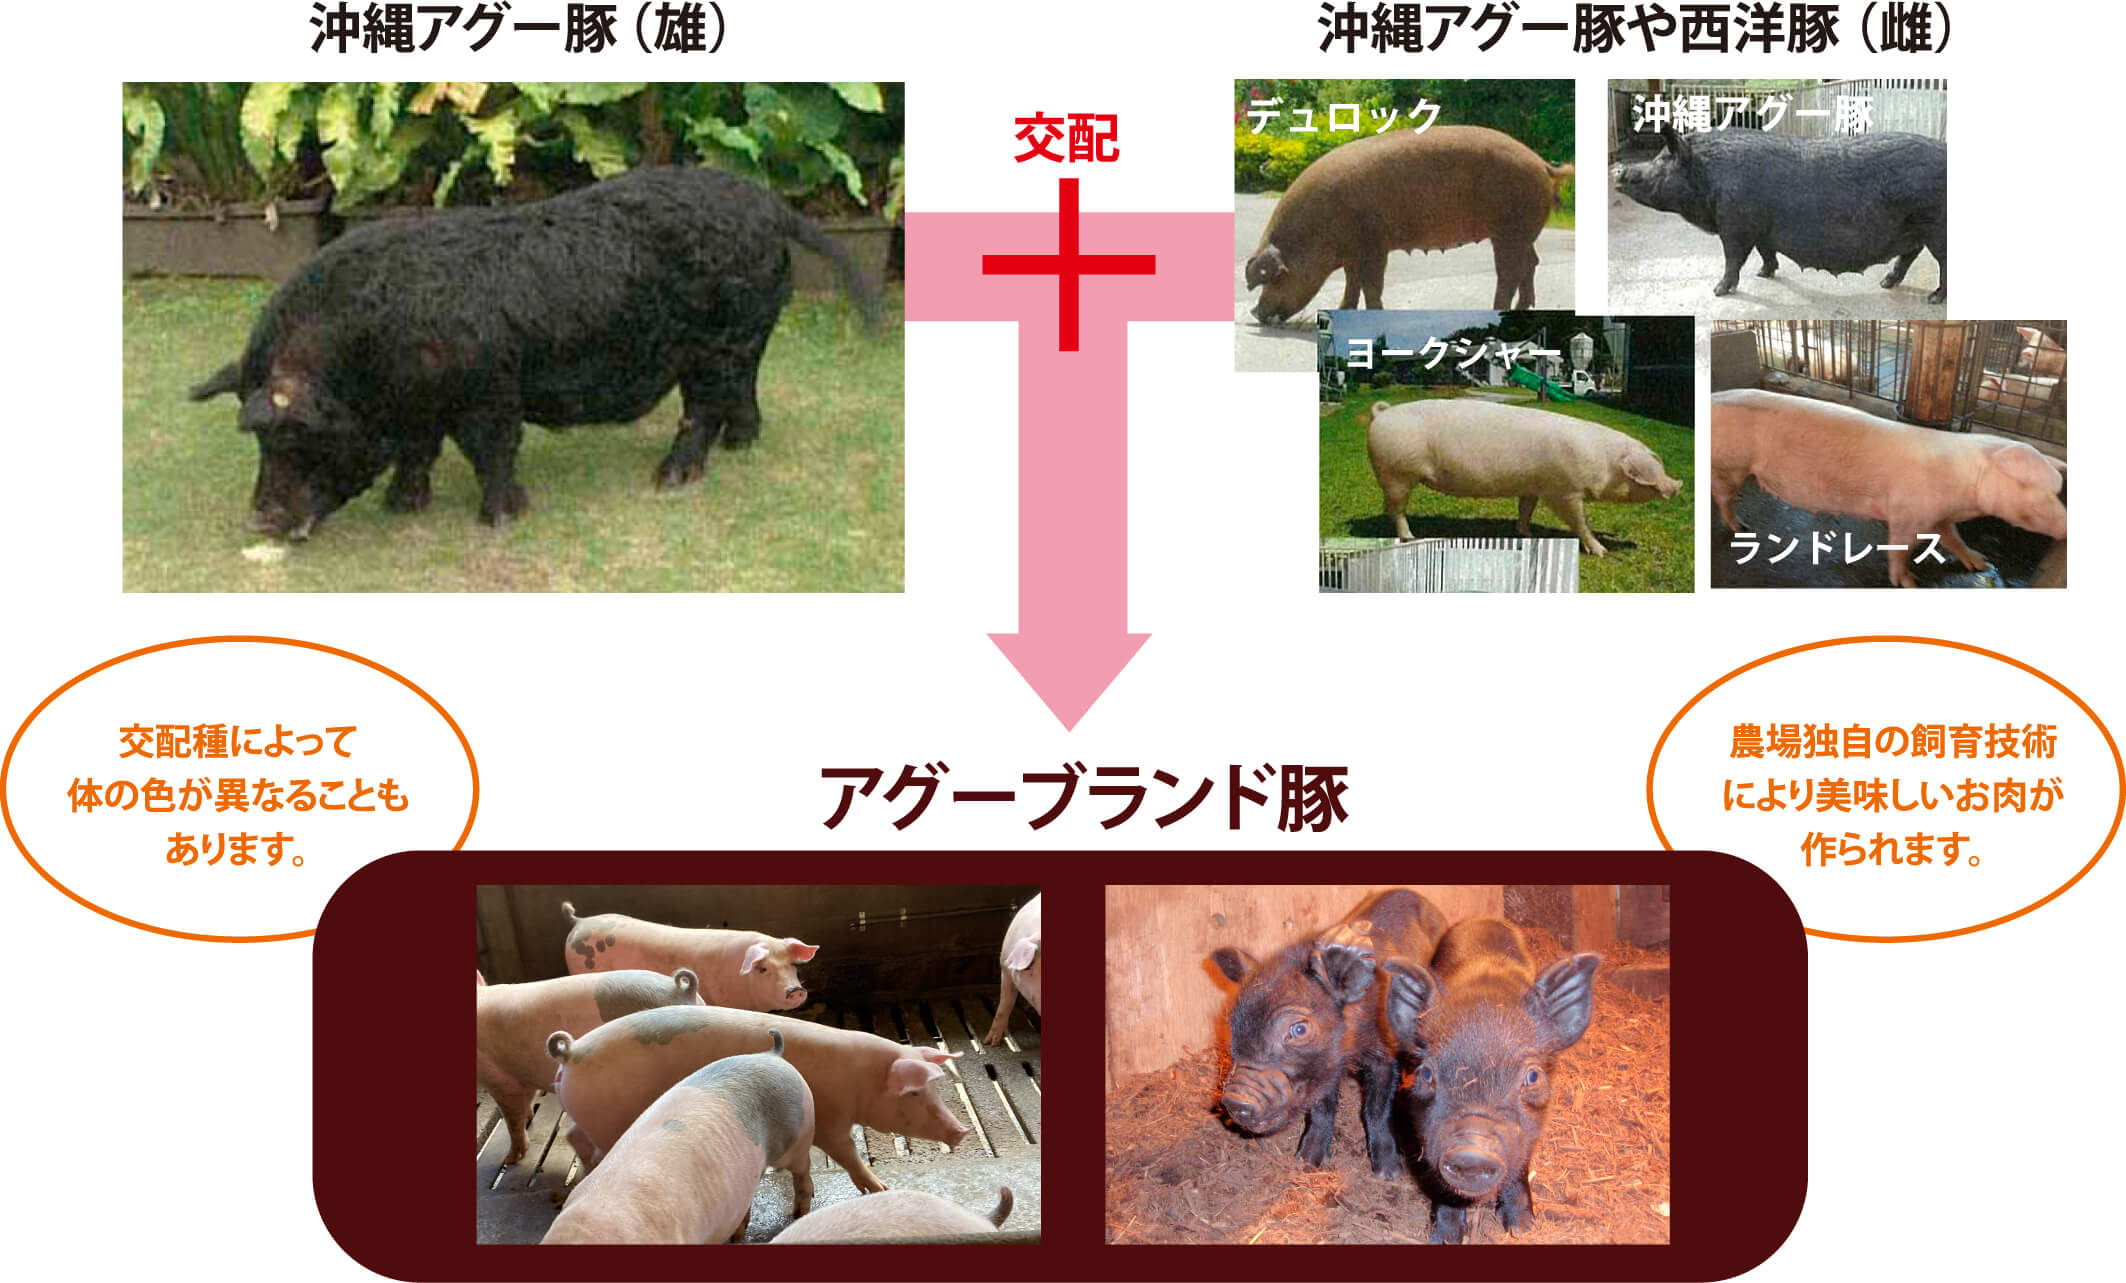 アグーブランド豚の交配の図。沖縄アグー豚（雄）、生産場独自仕様豚（雌）。交配種によって体の色が異なることもあります。農場独自の交配技術により美味しいお肉が作られます。